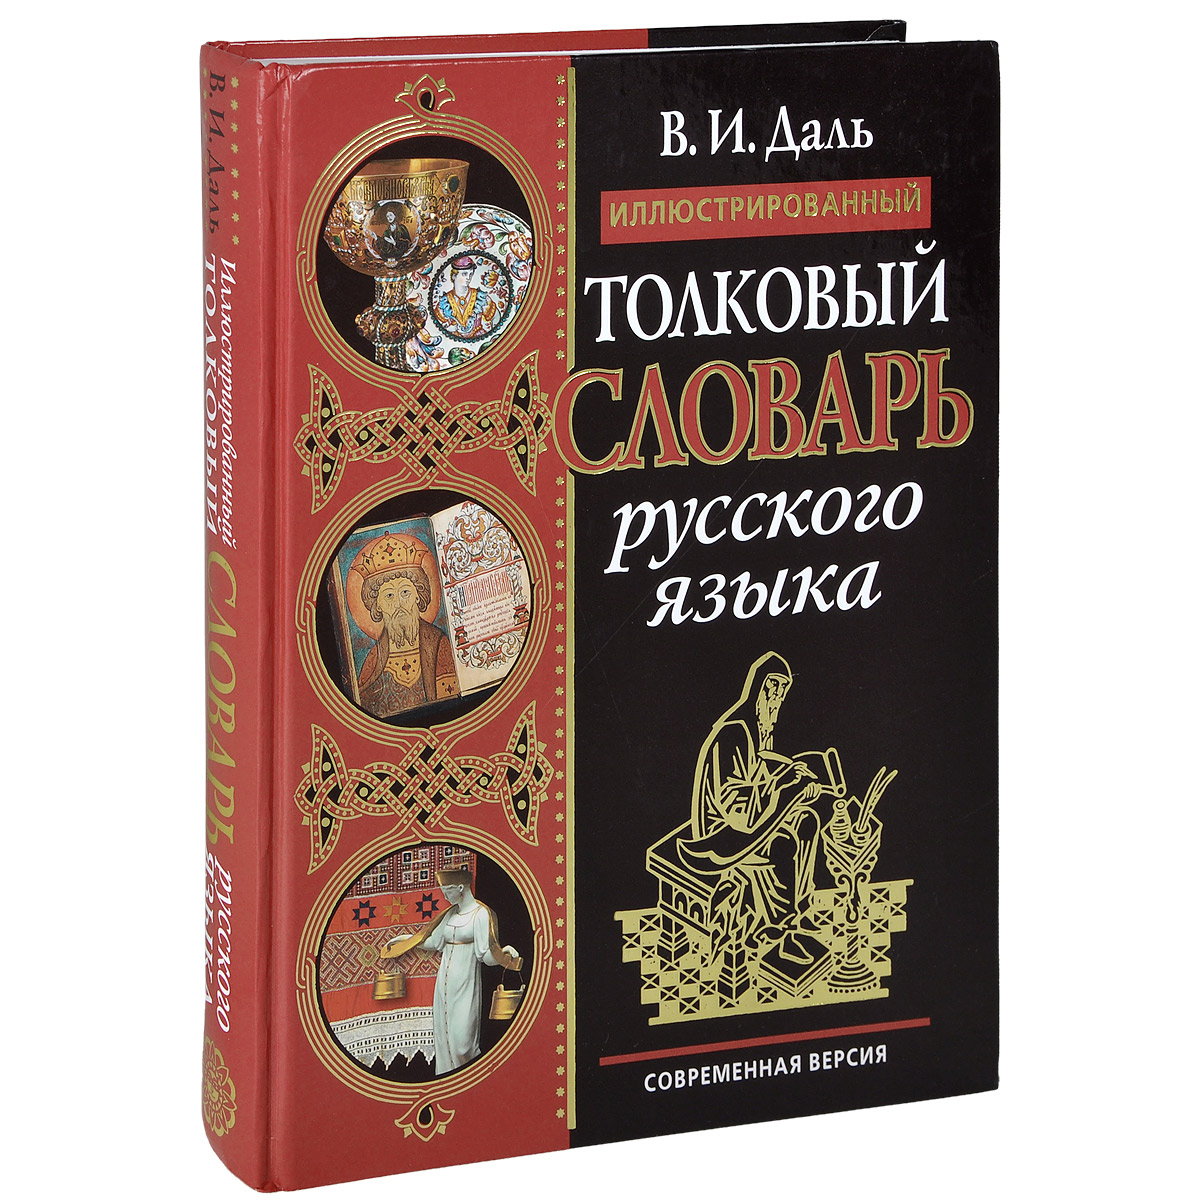 Даль Владимир Иванович книги словарь